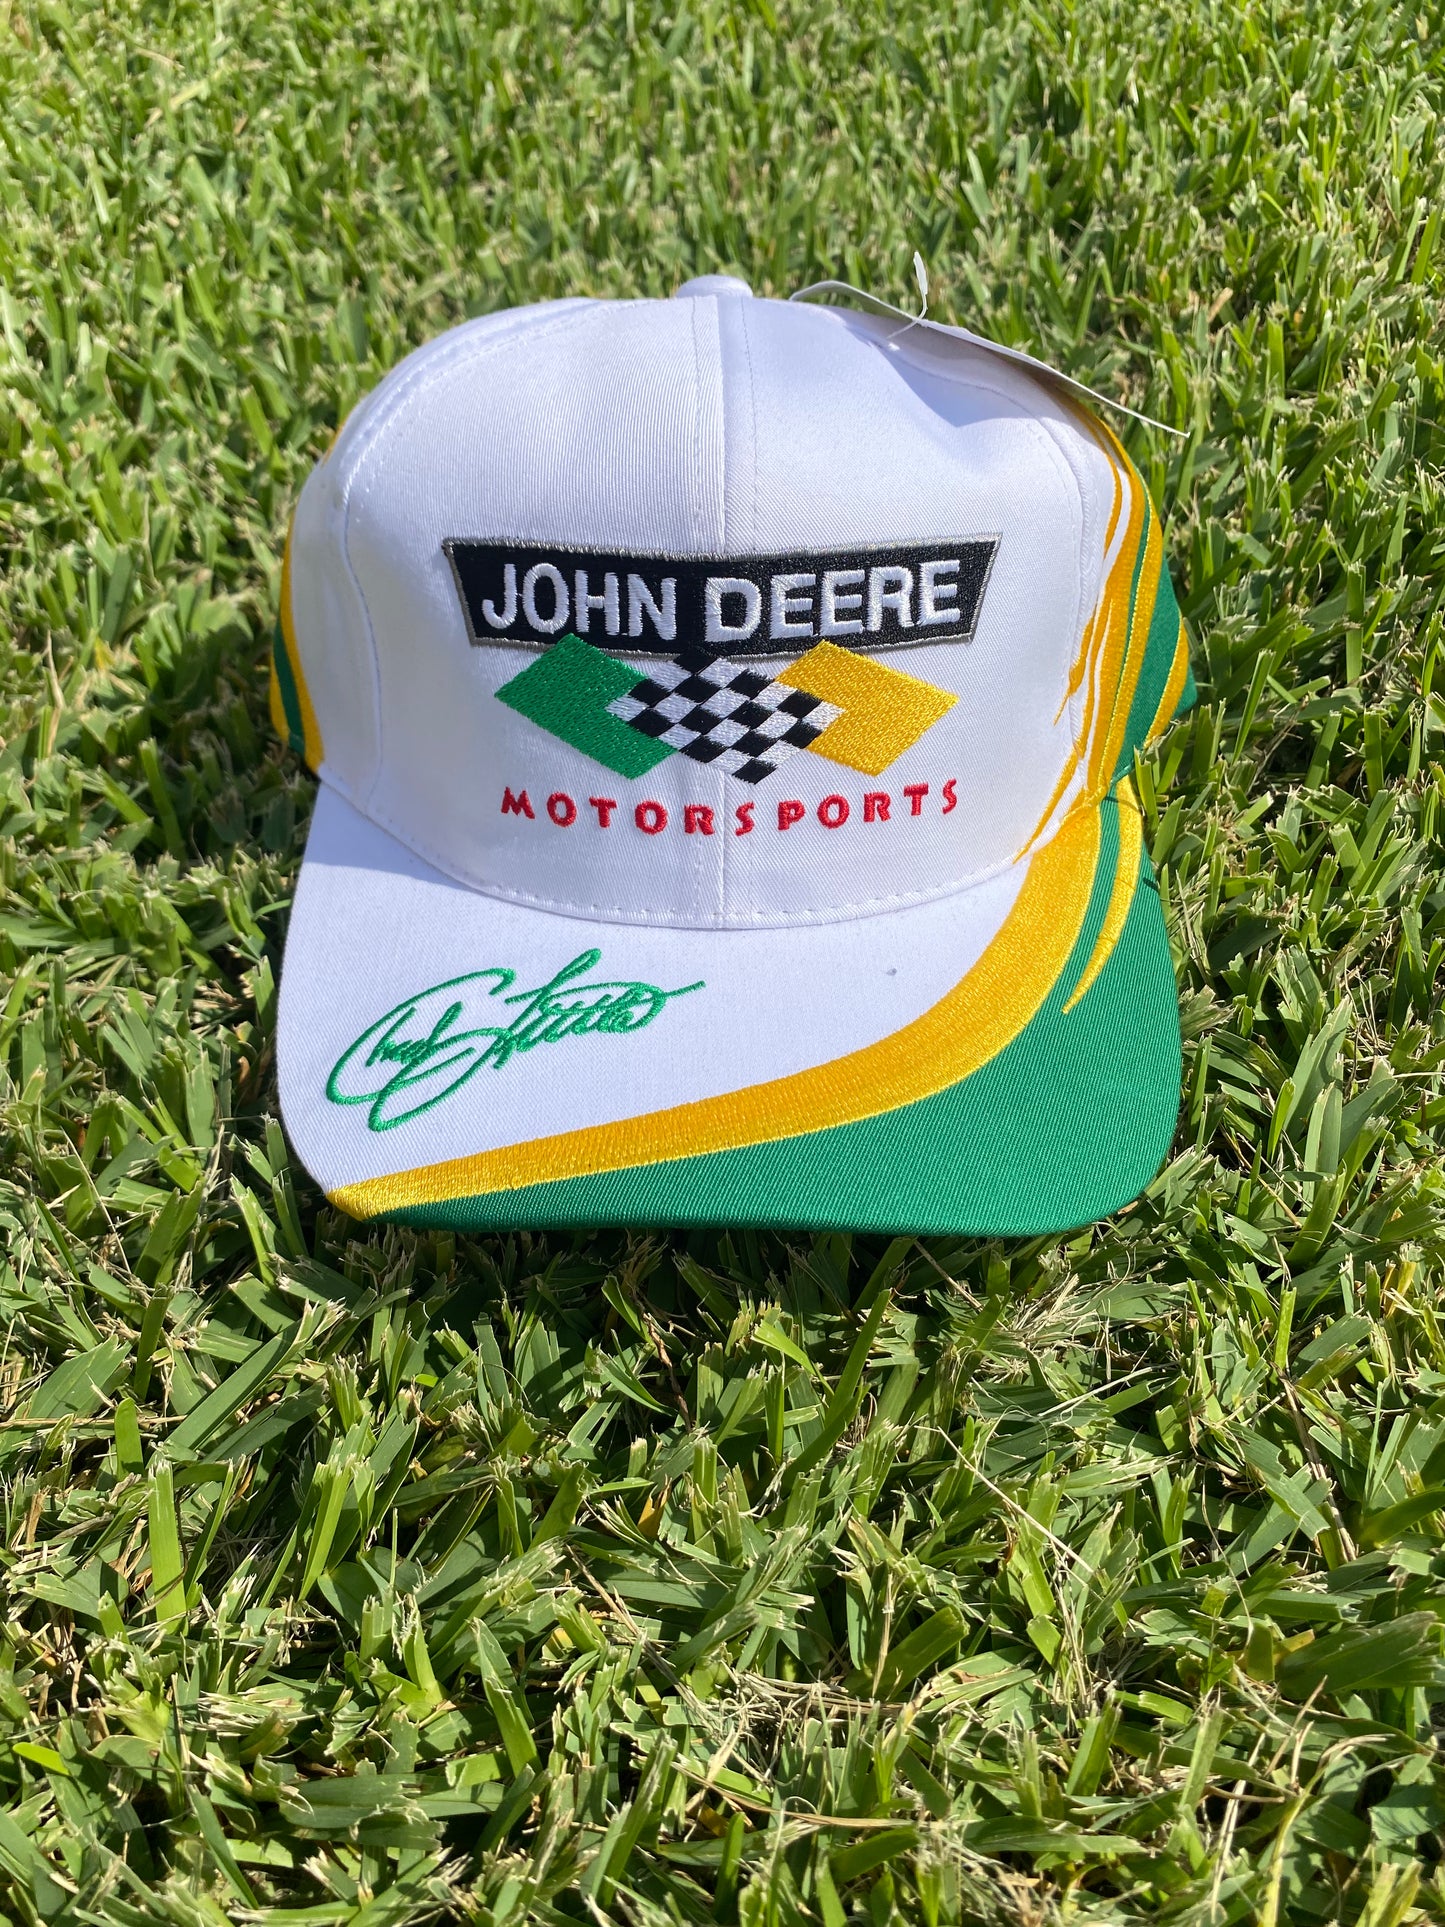 John Deere Motor Sports